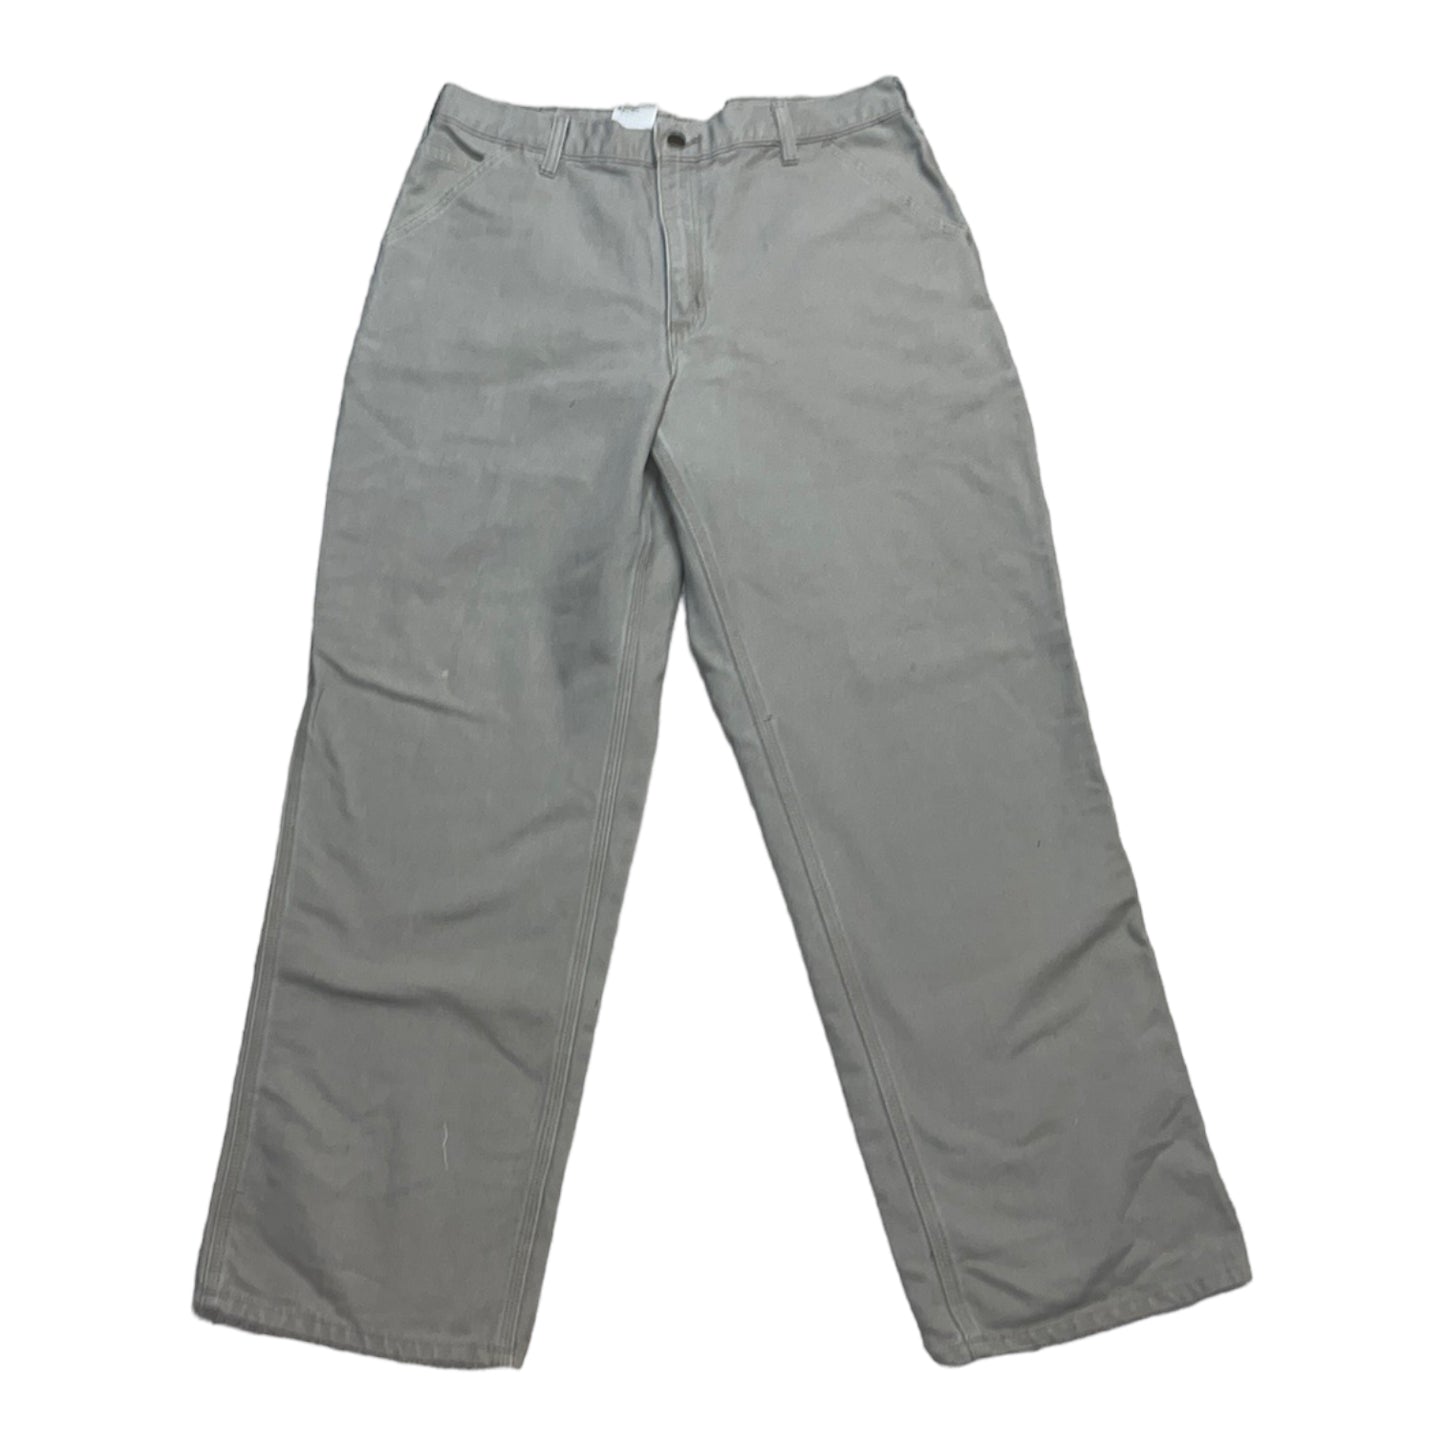 Y2K Carhartt Khaki Pants - 36x32